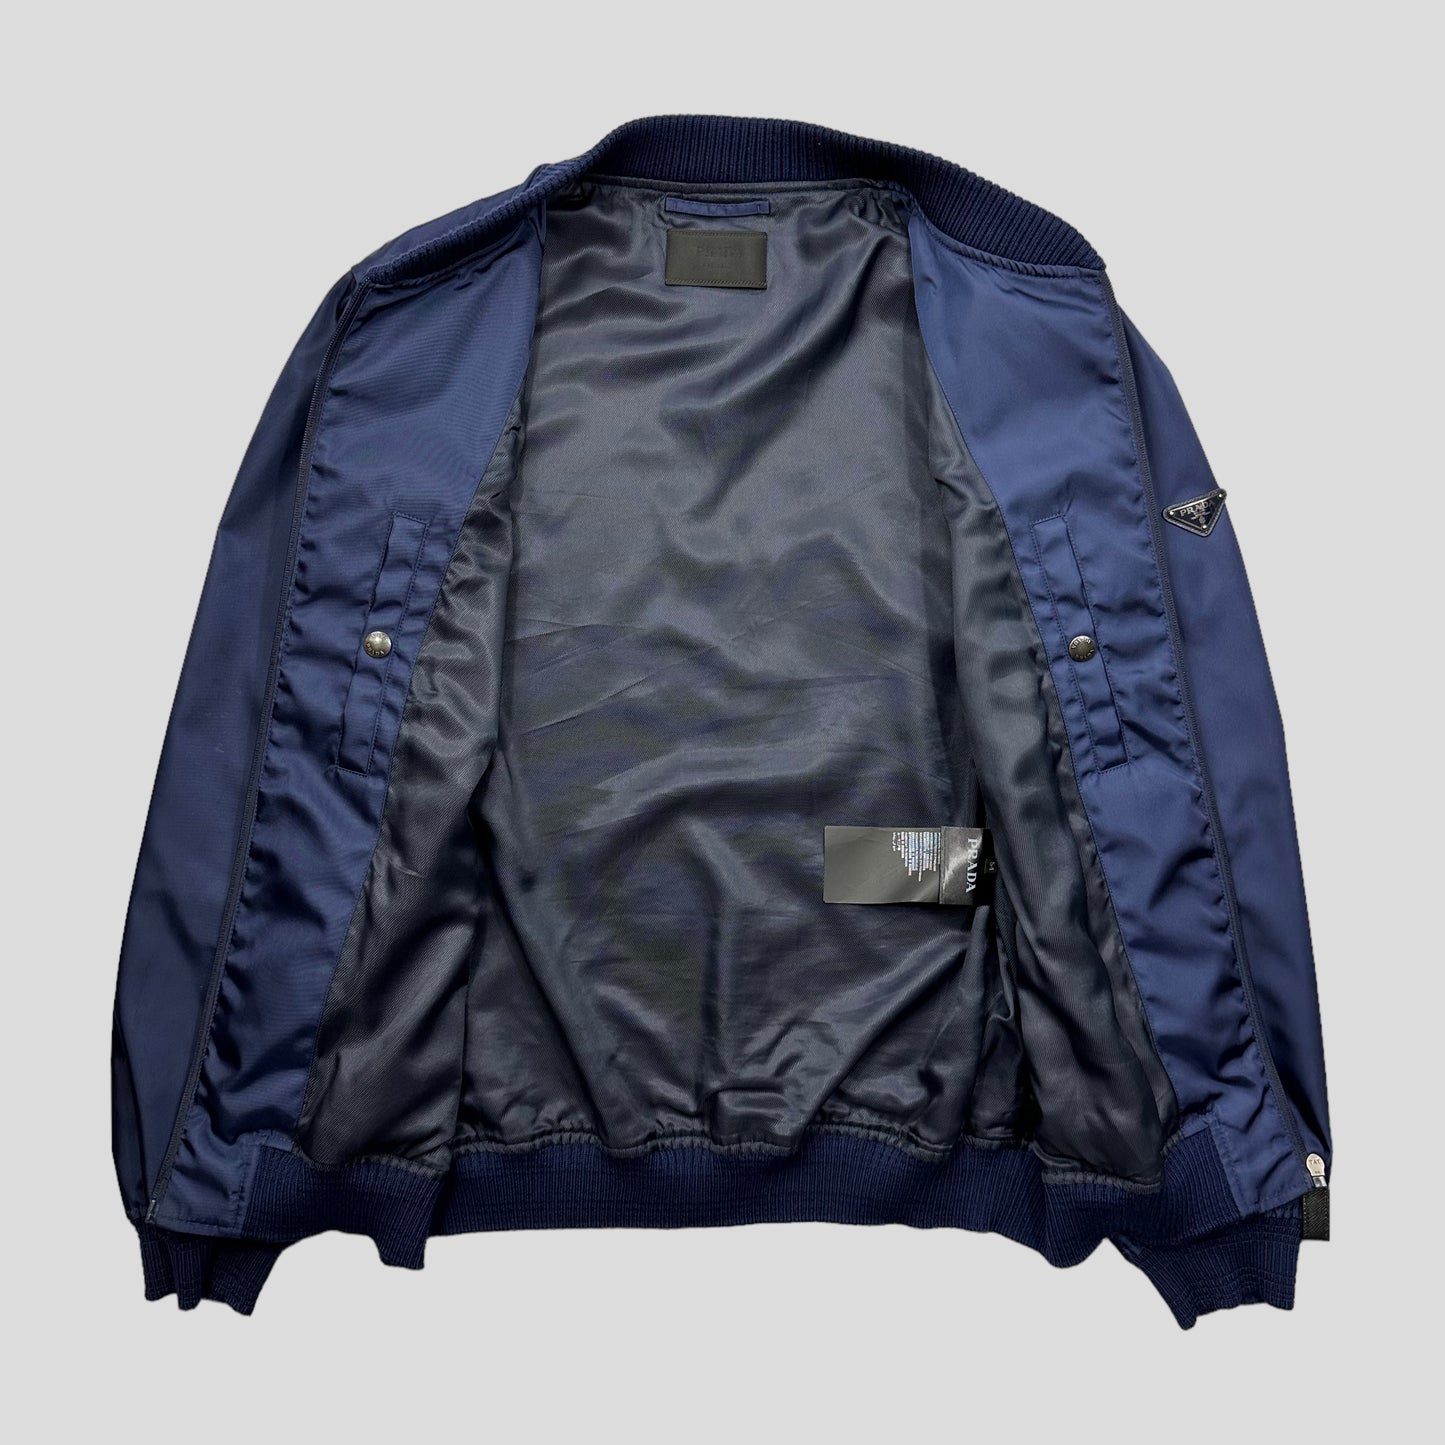 Prada Milano 2015 Metallic Blue Nylon Bomber Jacket - IT54